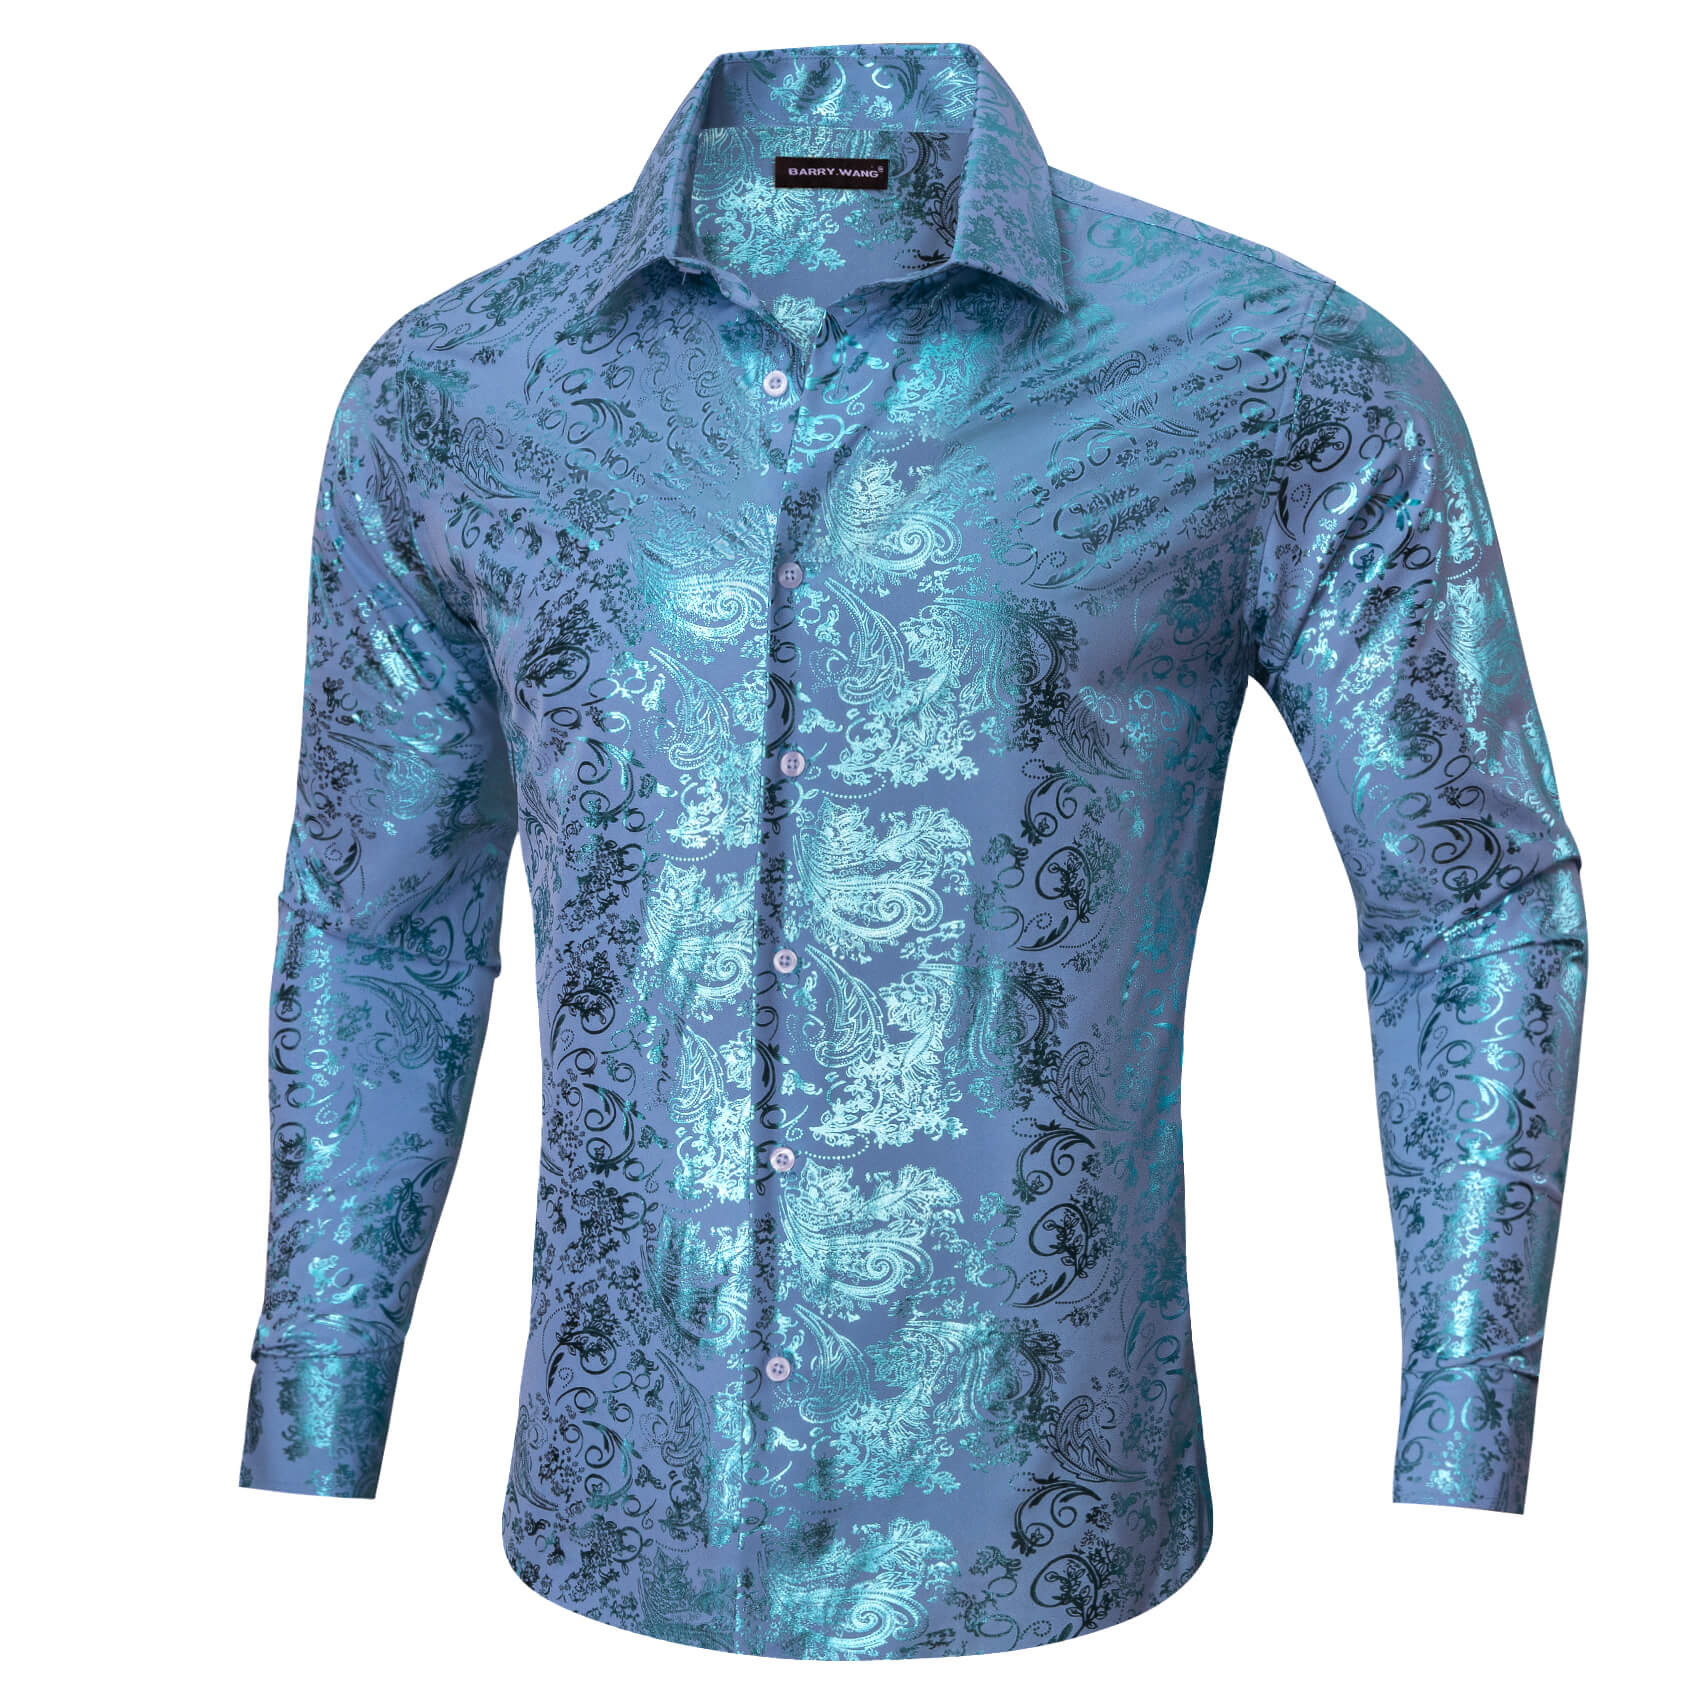 Barry.wang Men's Shirt Sky Blue Bronzing Floral Silk Long Sleeve Shirt